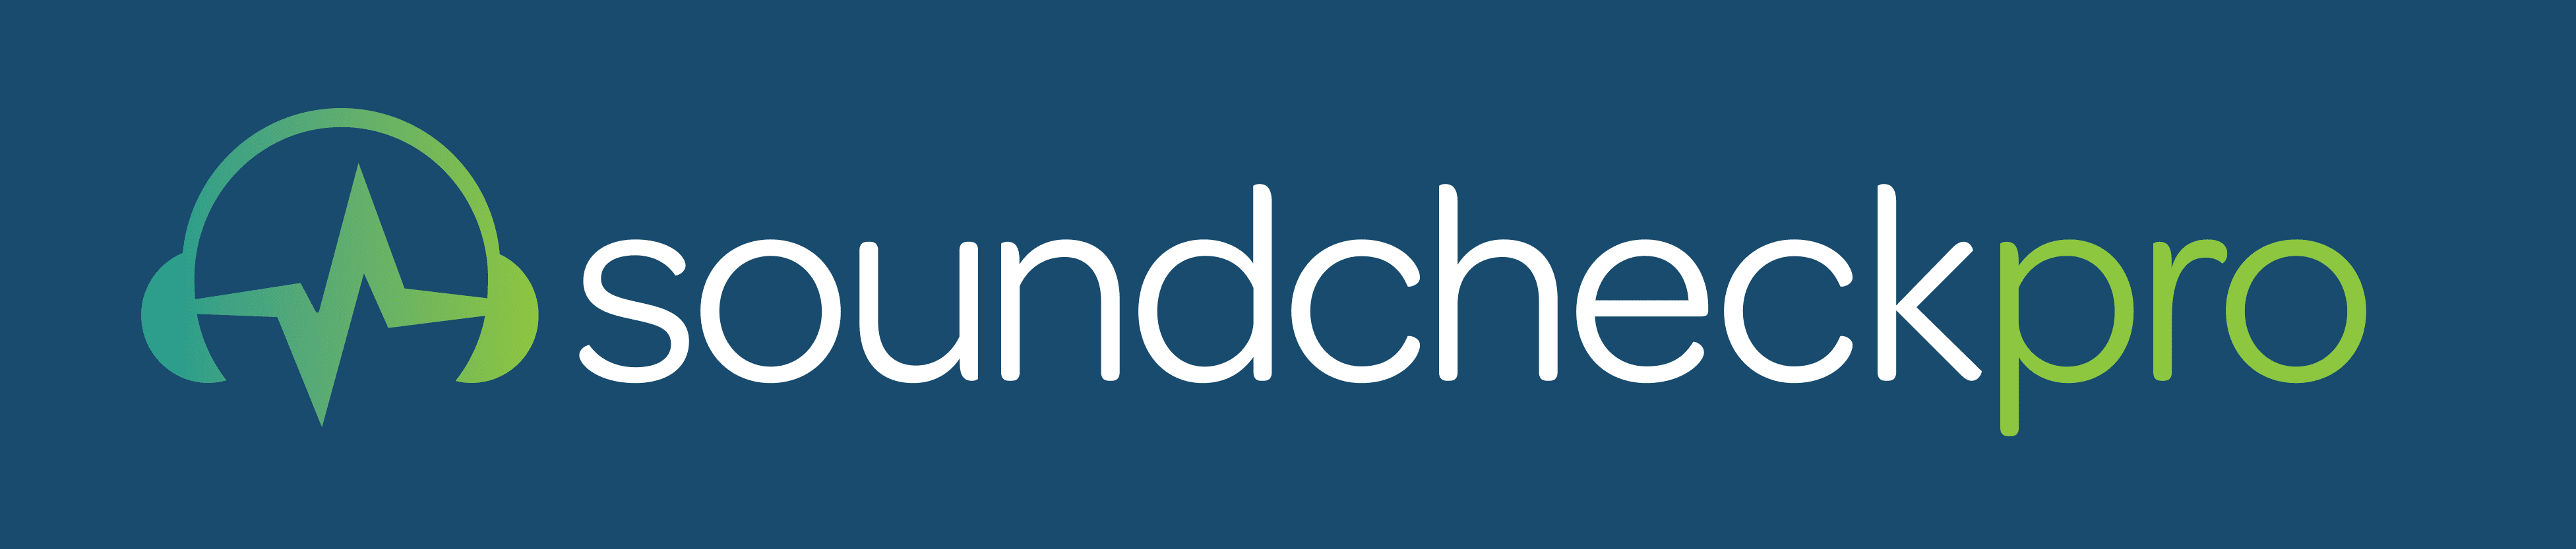 soundcheckPro-Logo-OnBlue